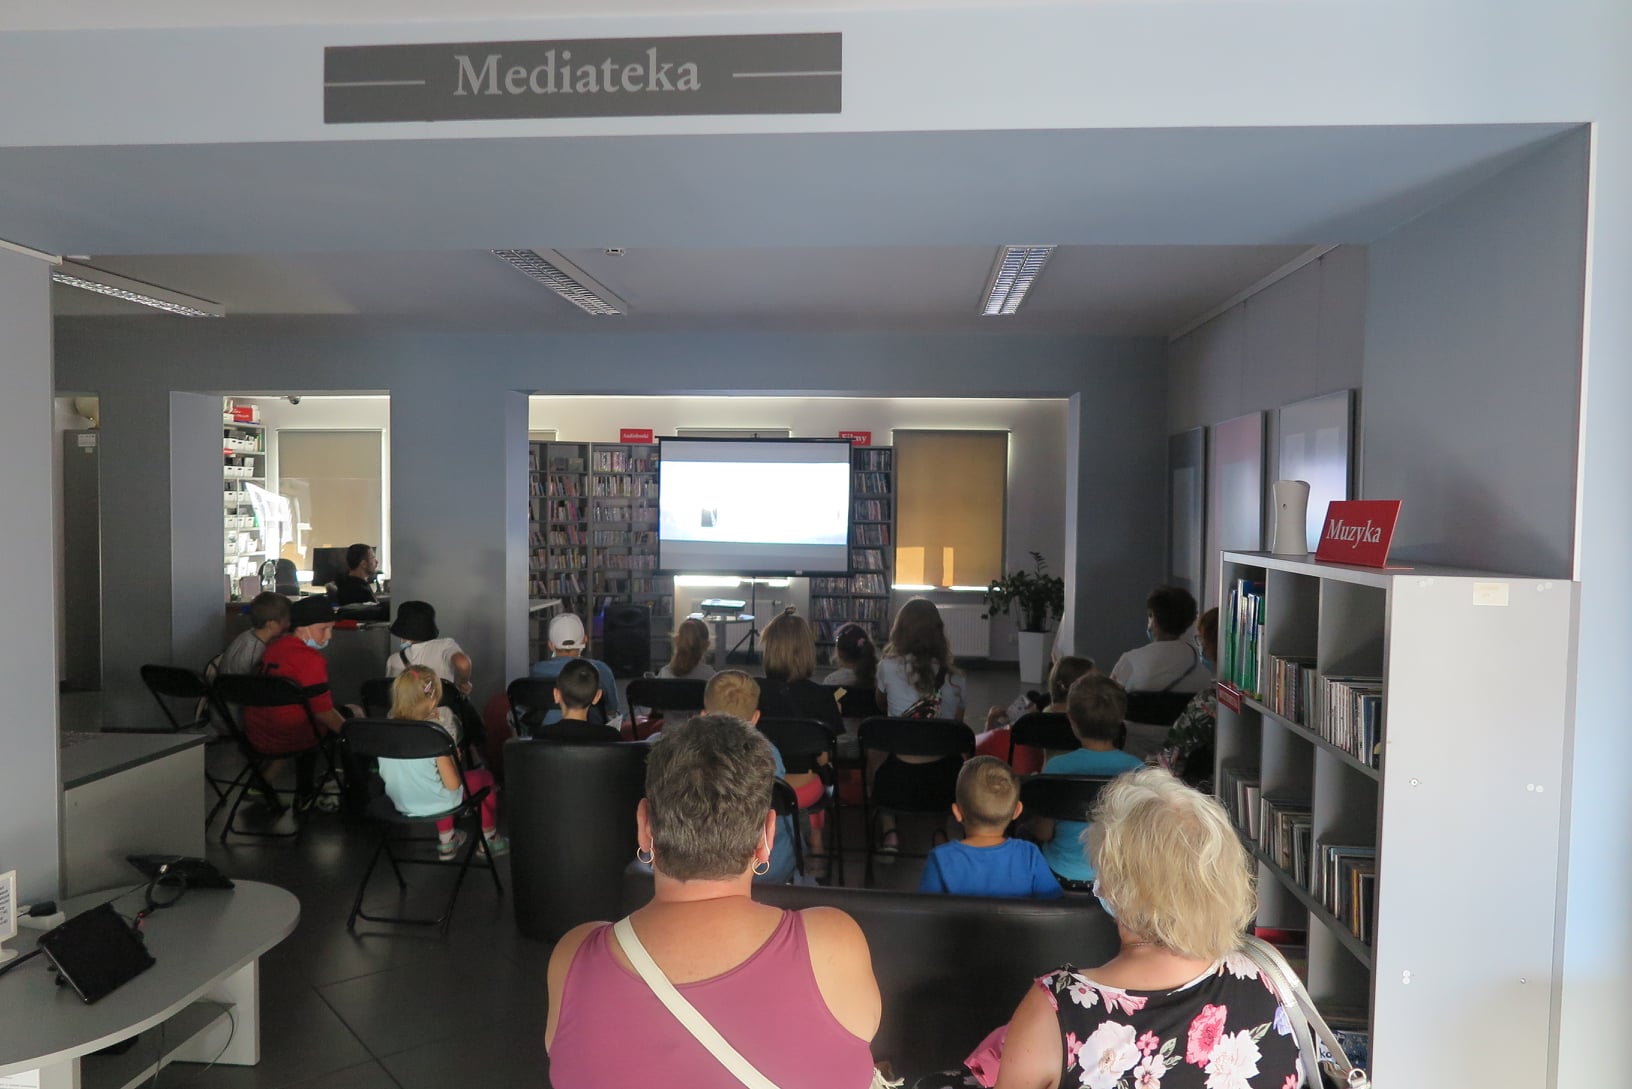 Seans bajkowy, grupa 24 dzieci (kilka osób dorosłych) oglądają bajkę w Mediatece.